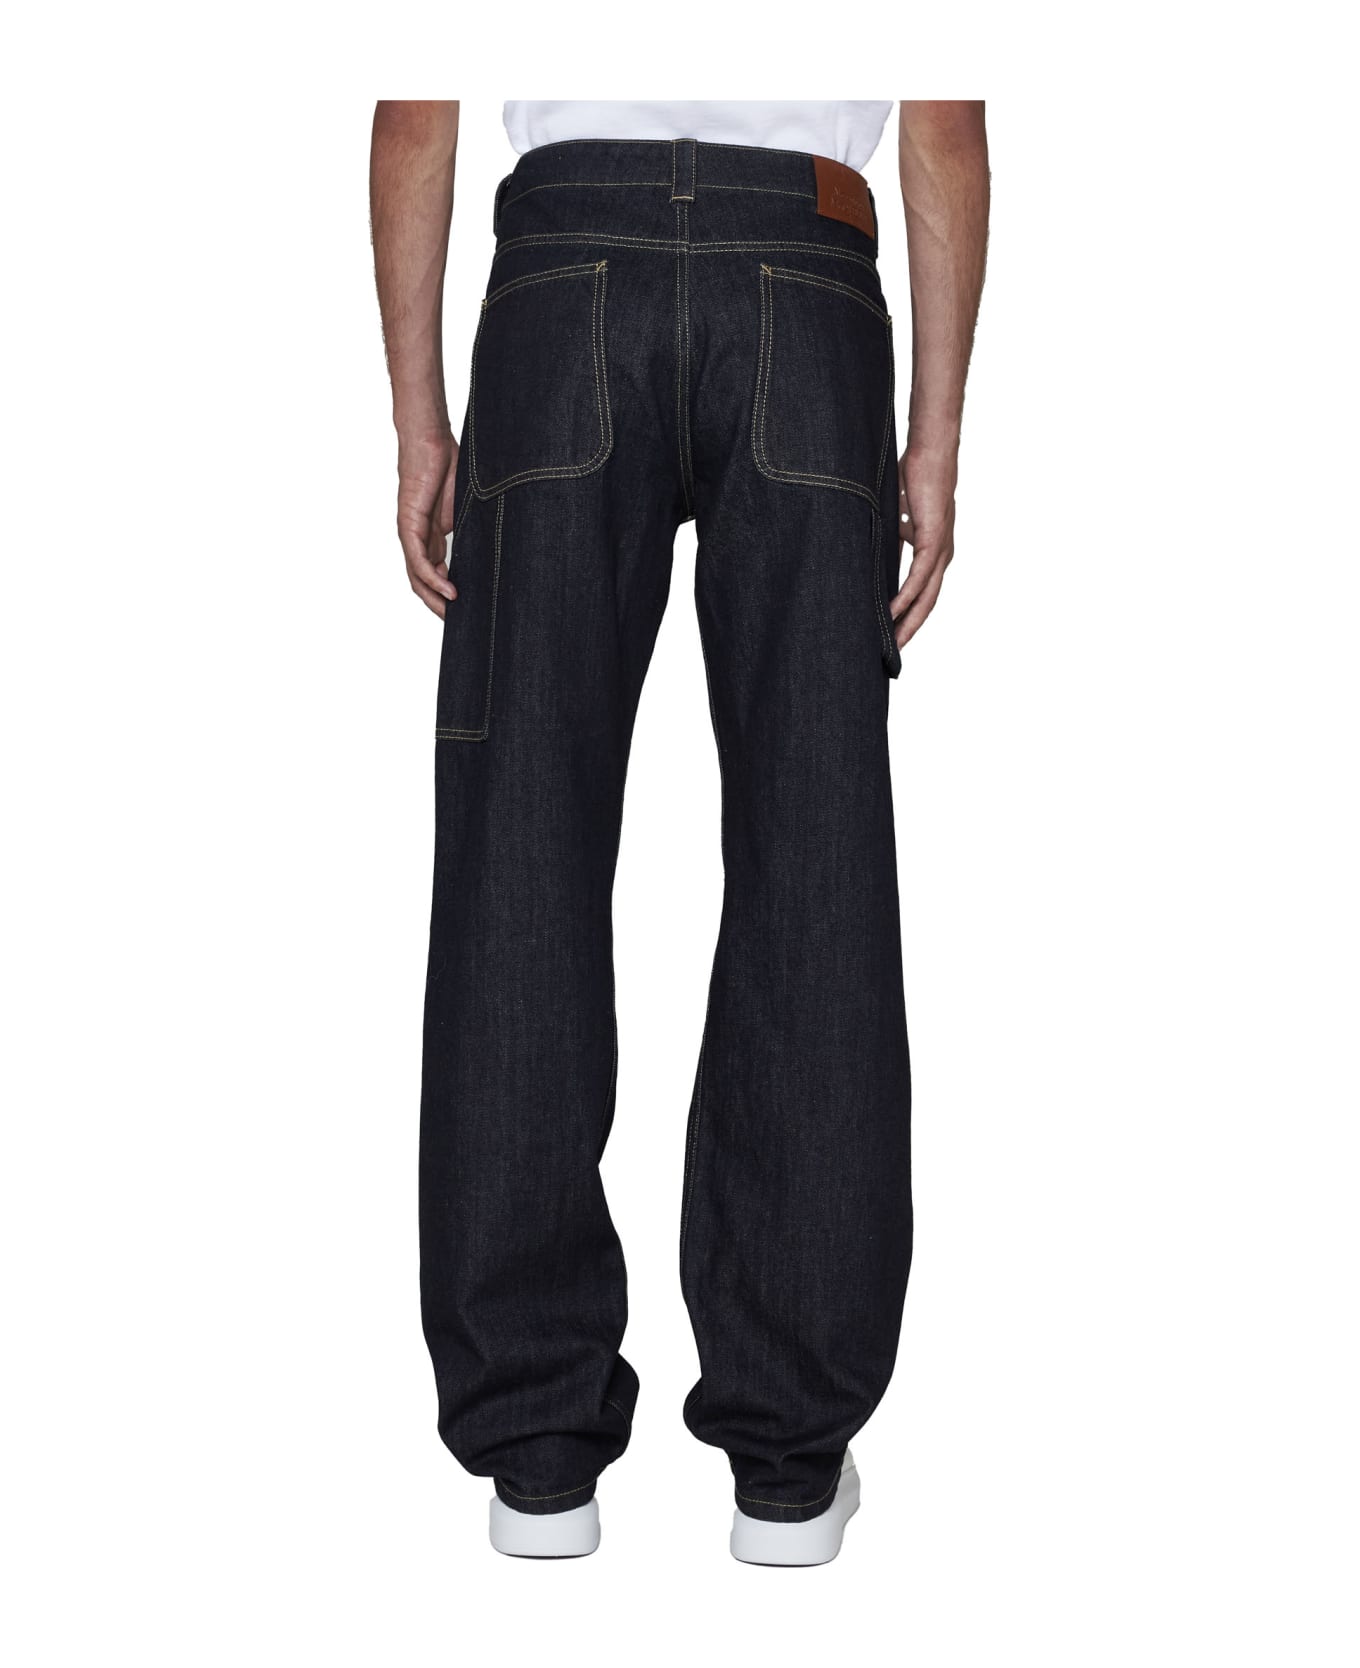 Alexander McQueen Straight Buttoned Jeans - Indigo デニム